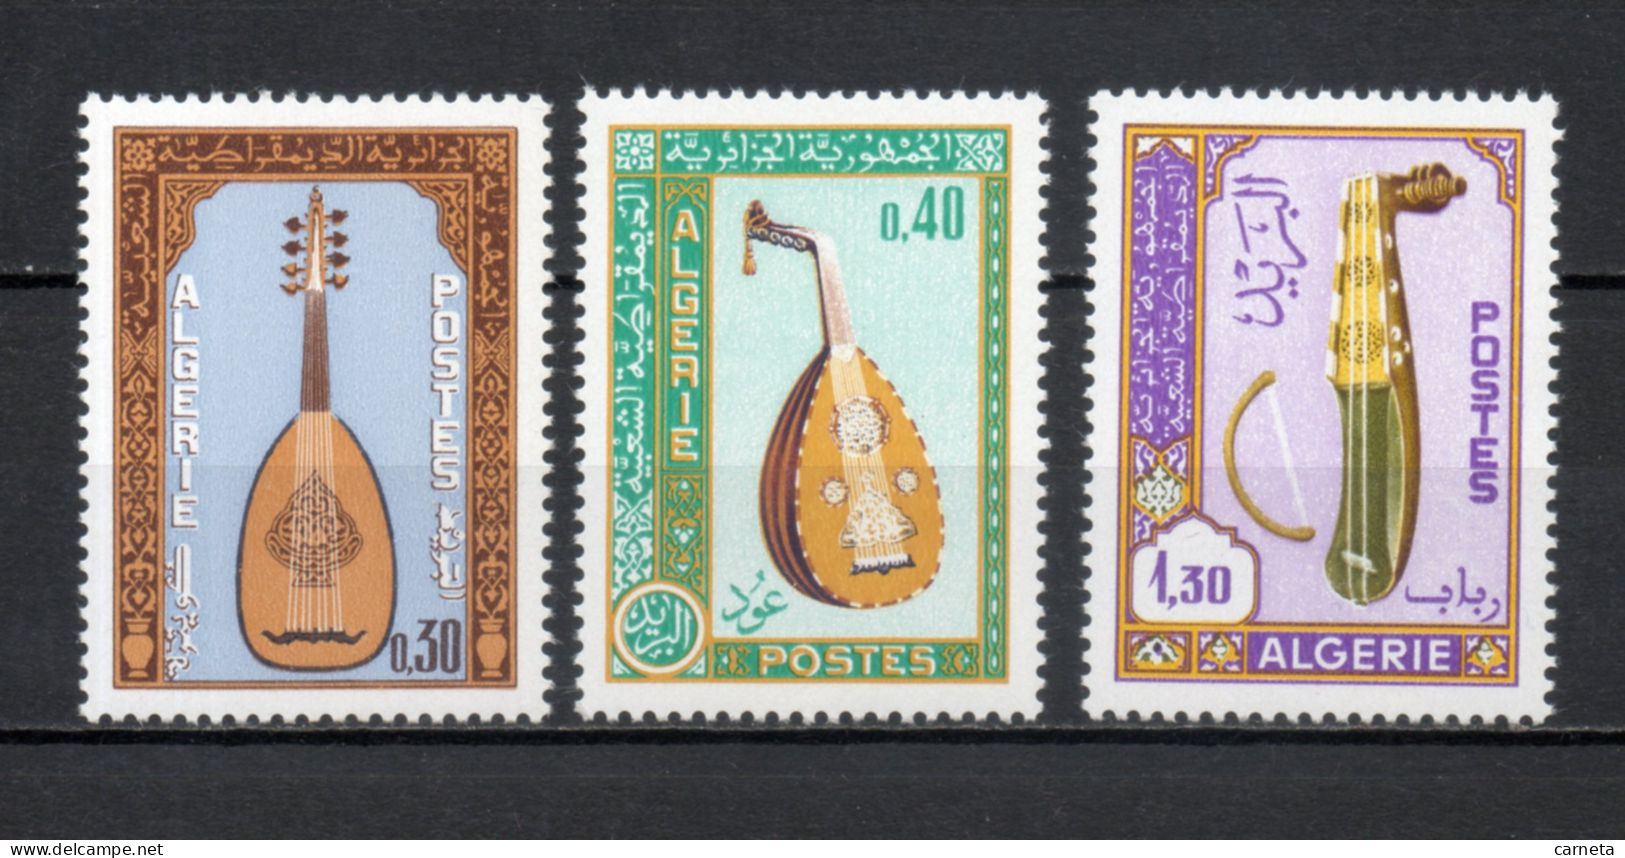 ALGERIE N° 460 à 462   NEUFS SANS CHARNIERE COTE 5.60€    INSTRUMENTS DE MUSIQUE - Algérie (1962-...)